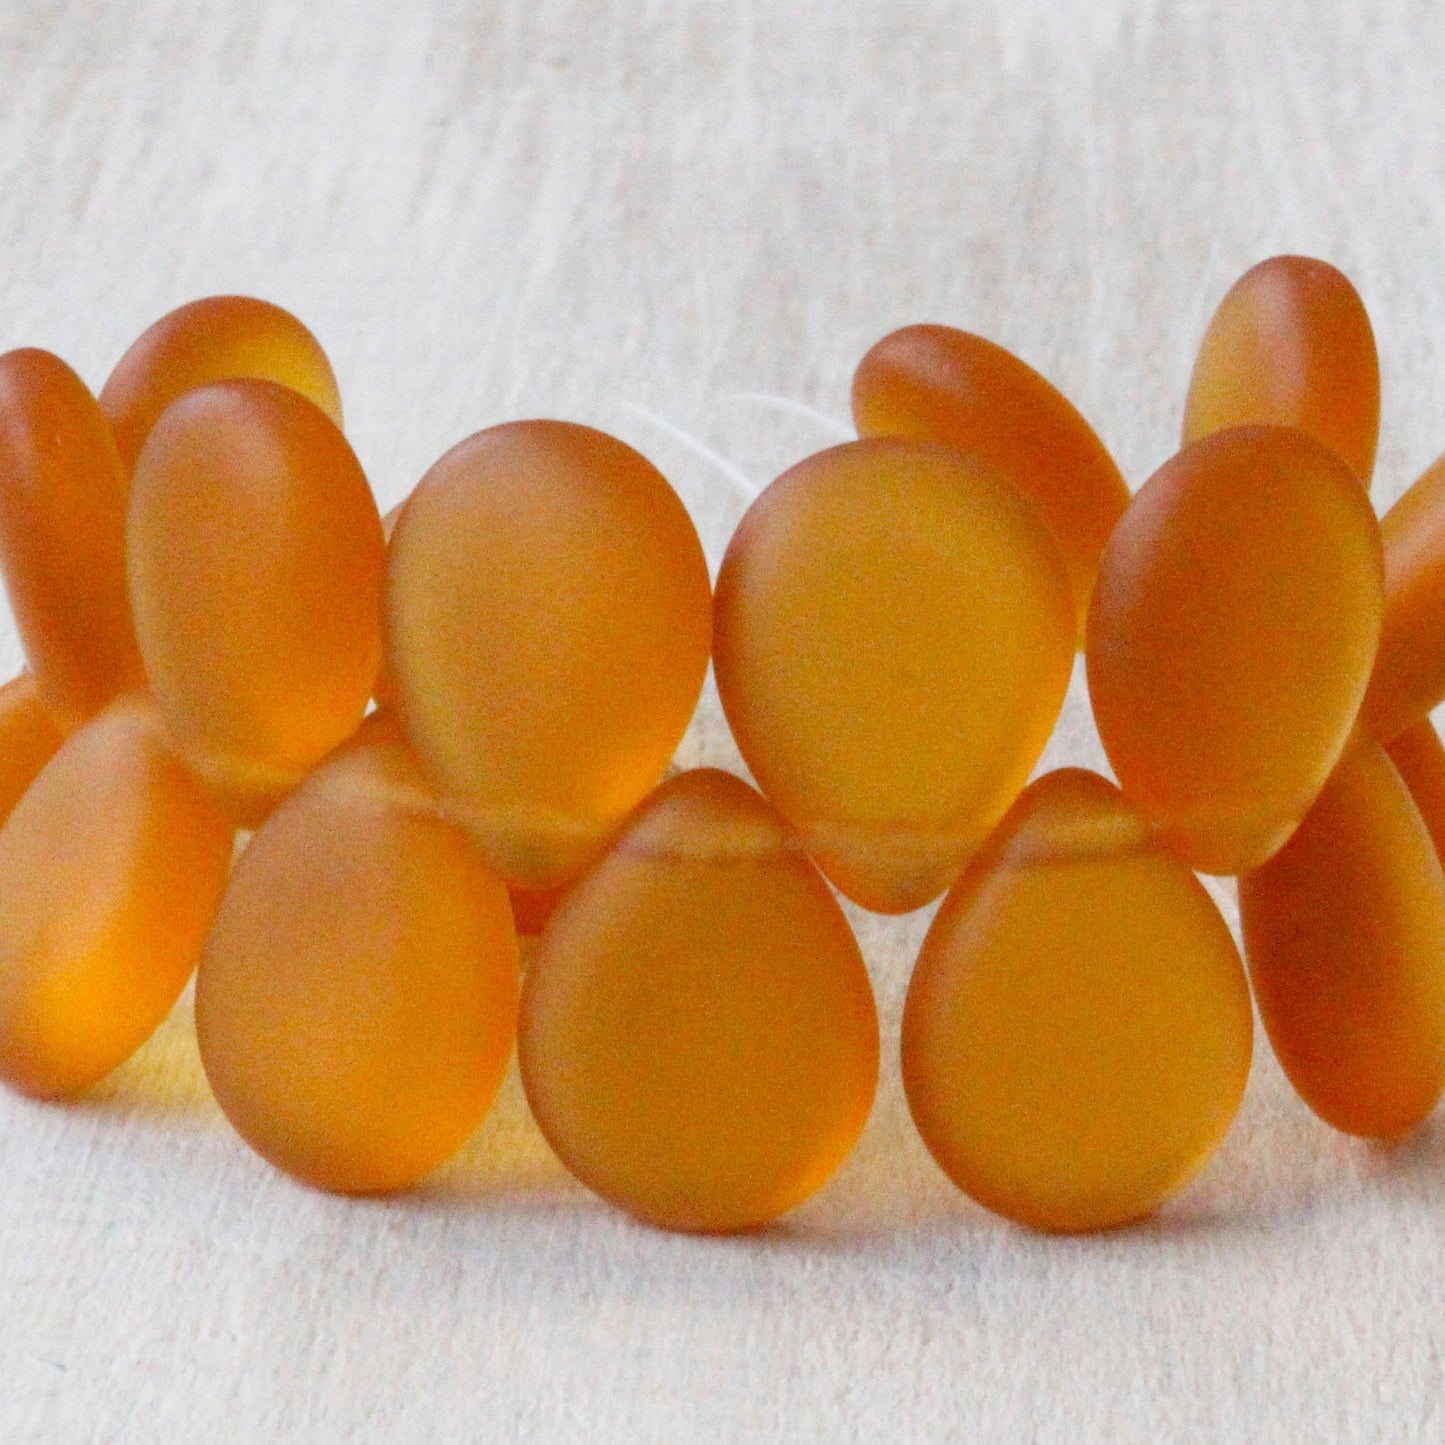 12x16mm Flat Glass Teardrop Beads - Honey Amber Matte - 20 Beads